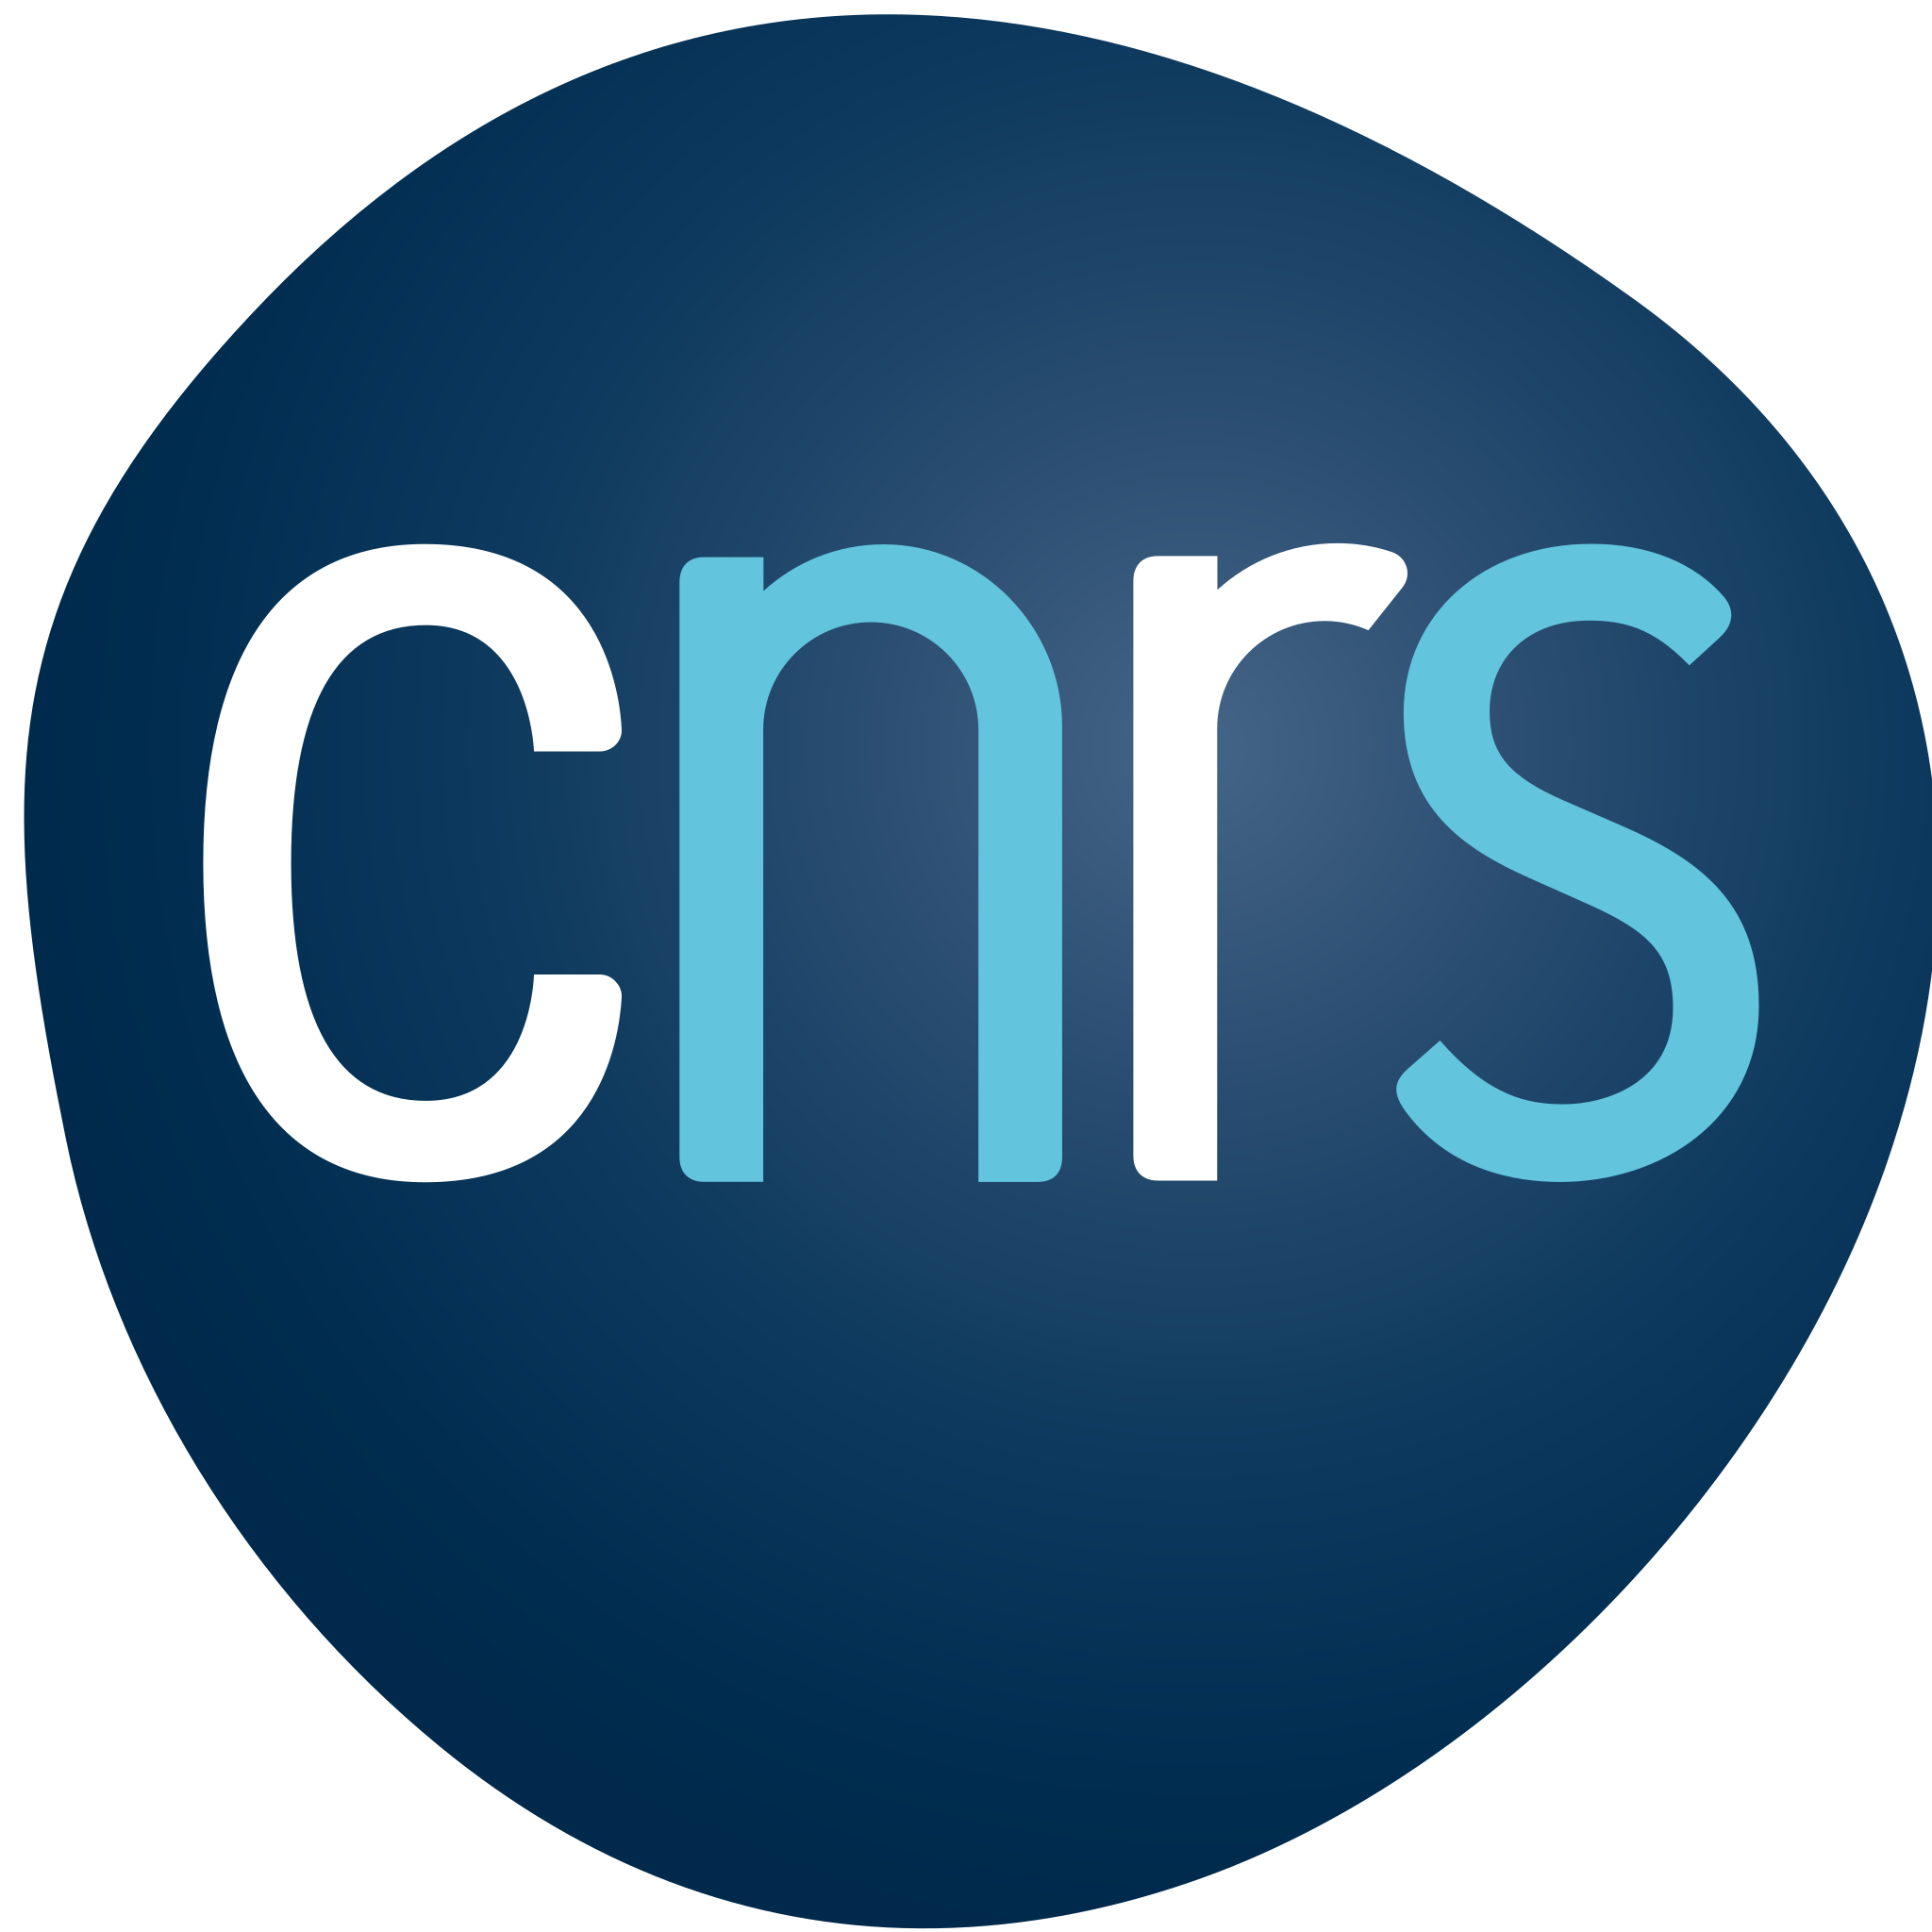 CNRS (Centre National de la Recherche Scientifique)